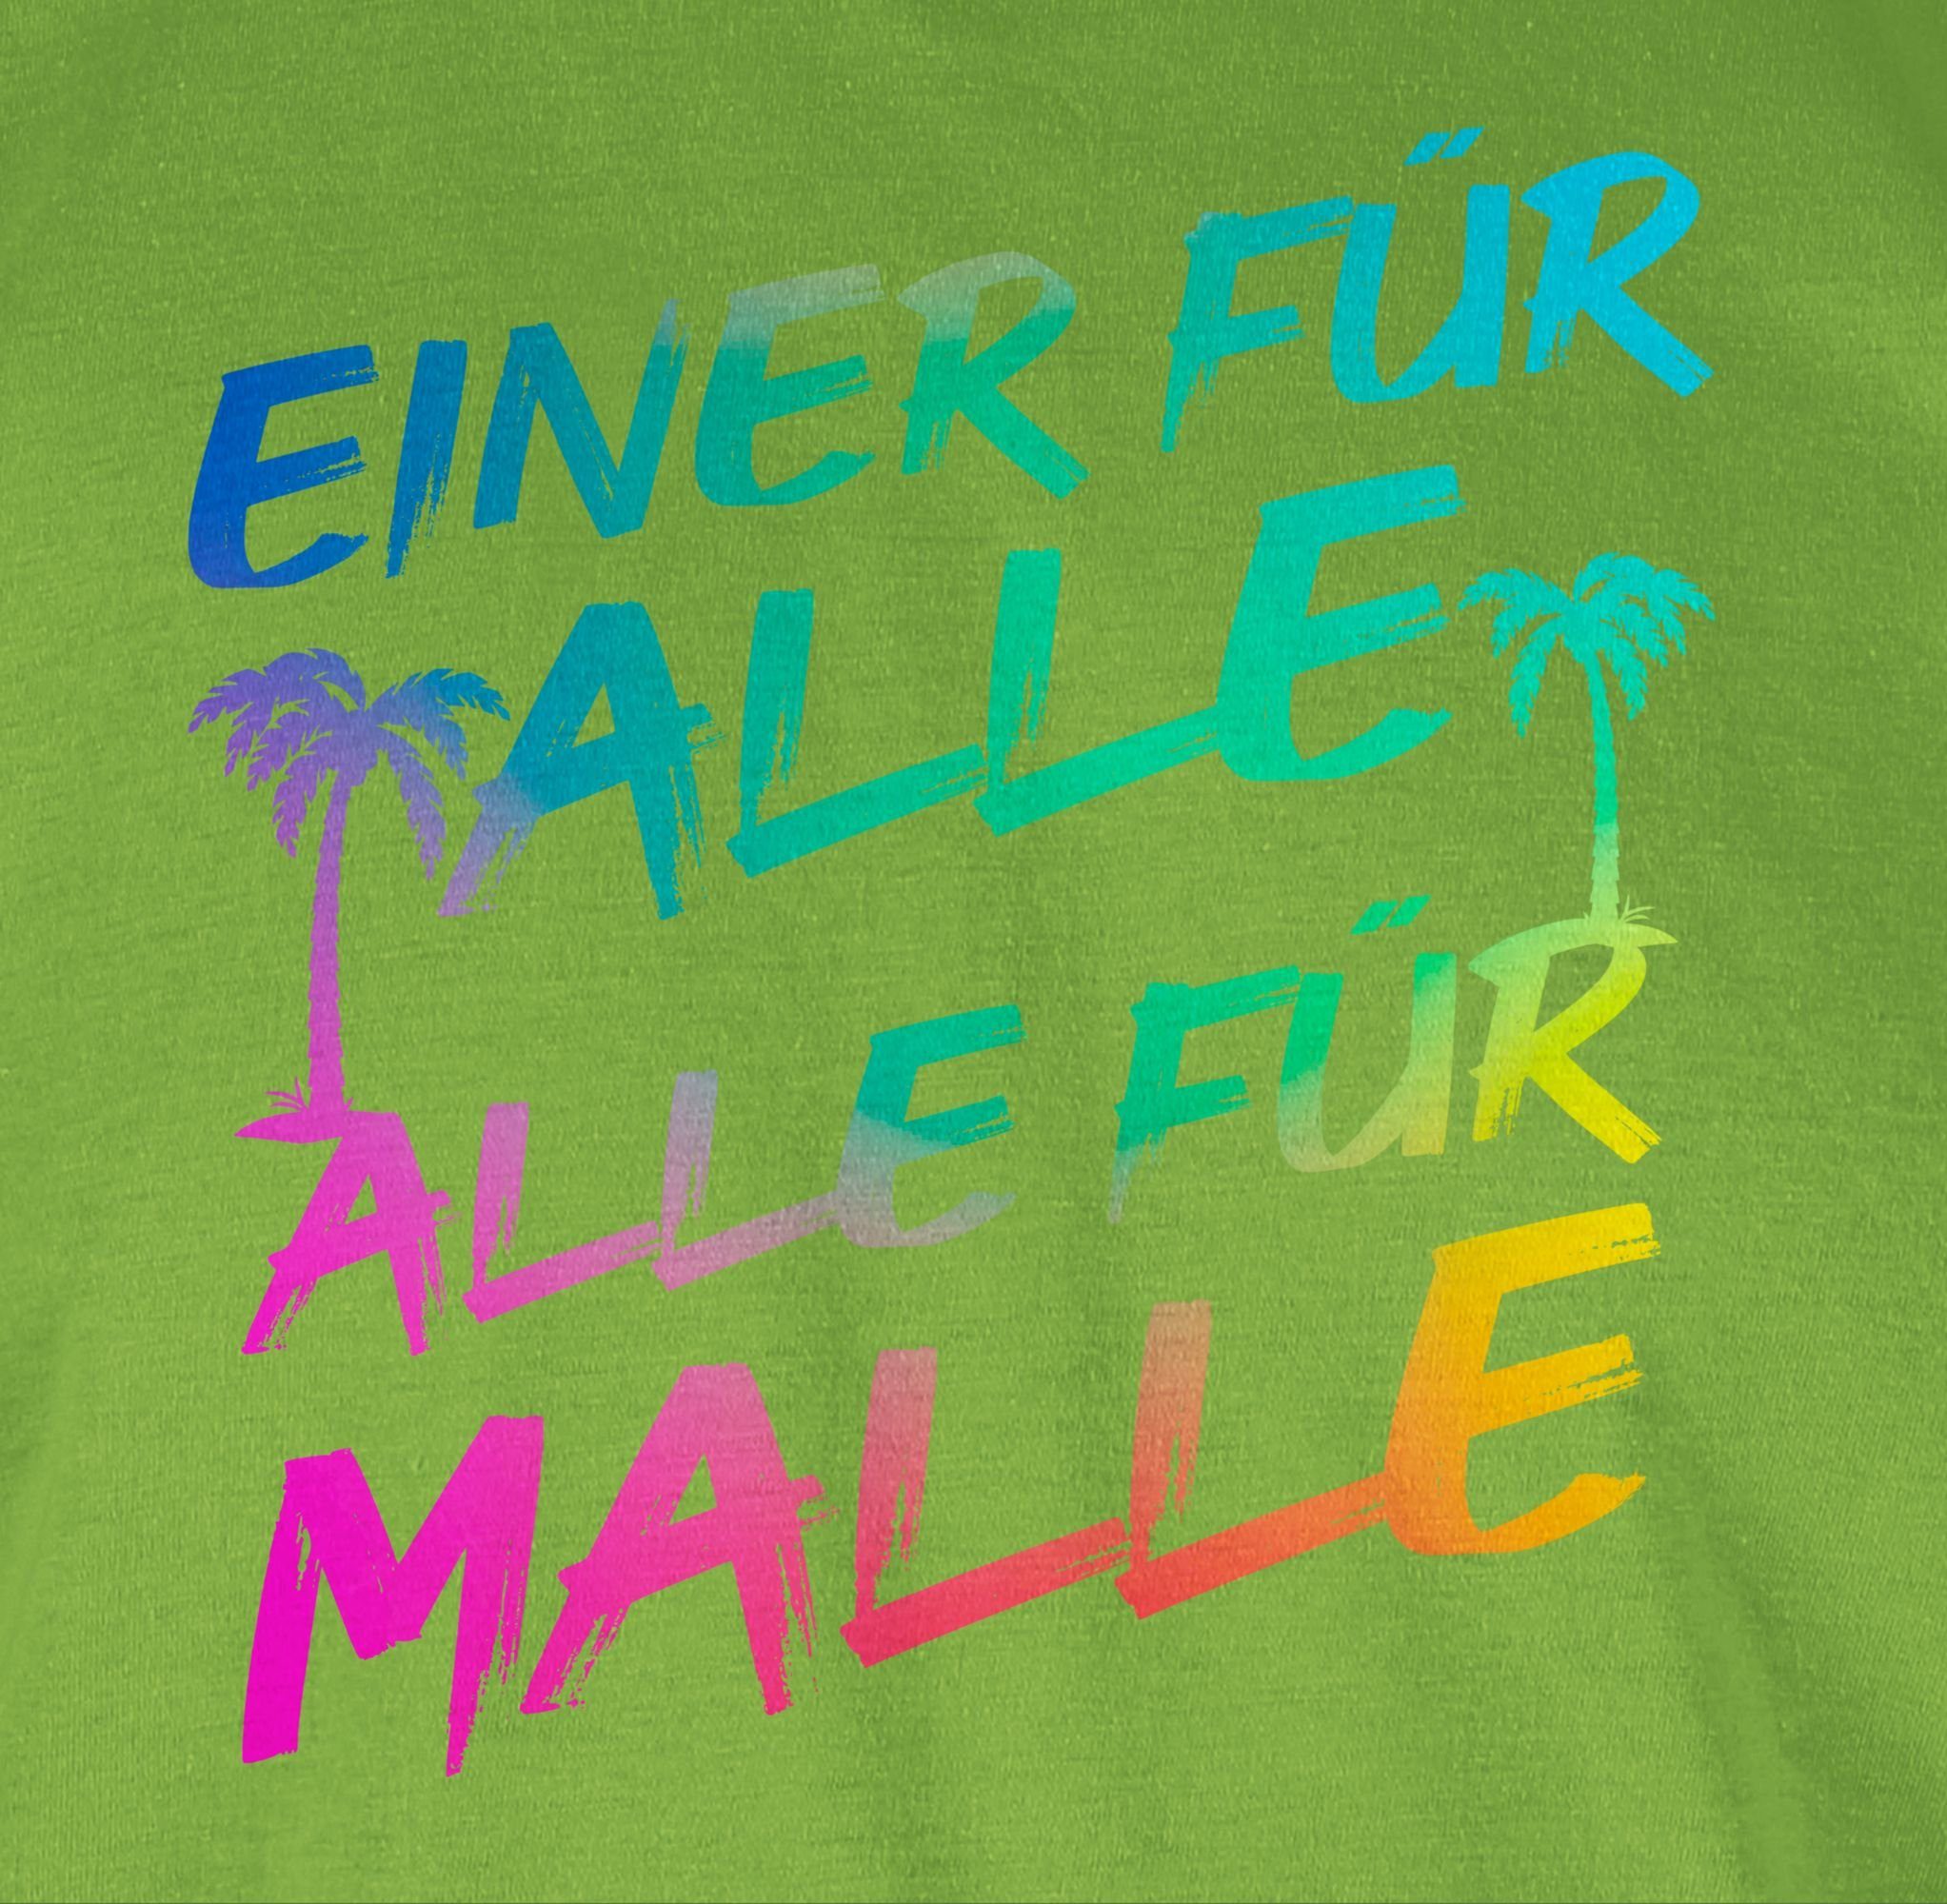 Shirtracer T-Shirt Hellgrün Herren Alle 03 für Alle Einer für alle für Malle - Sommerurlaub Malle